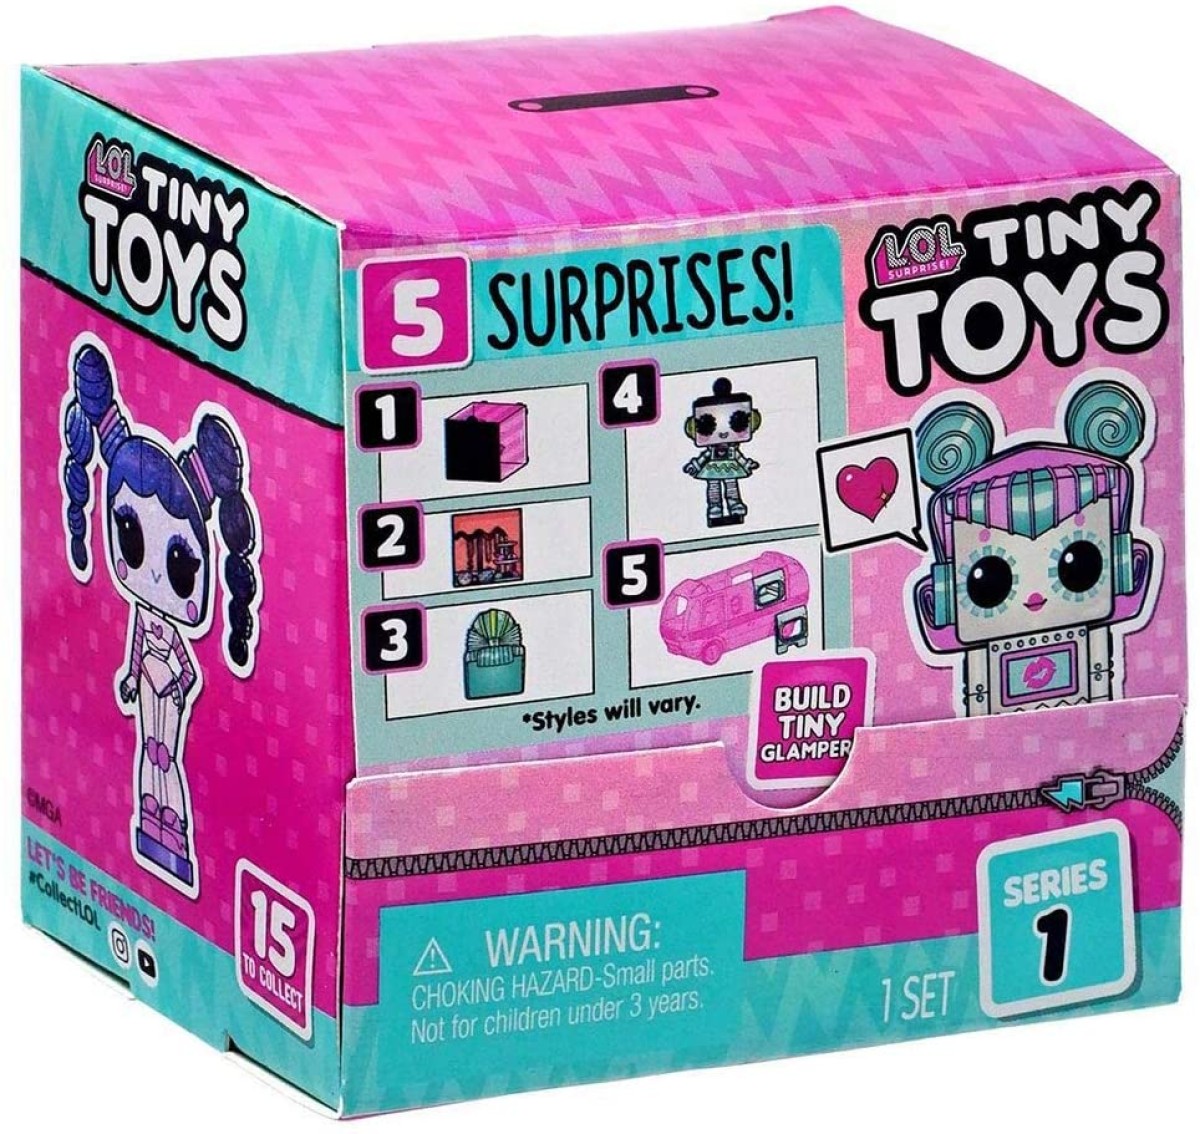 L.O.L. Surprise! Tiny Toys Series 1 